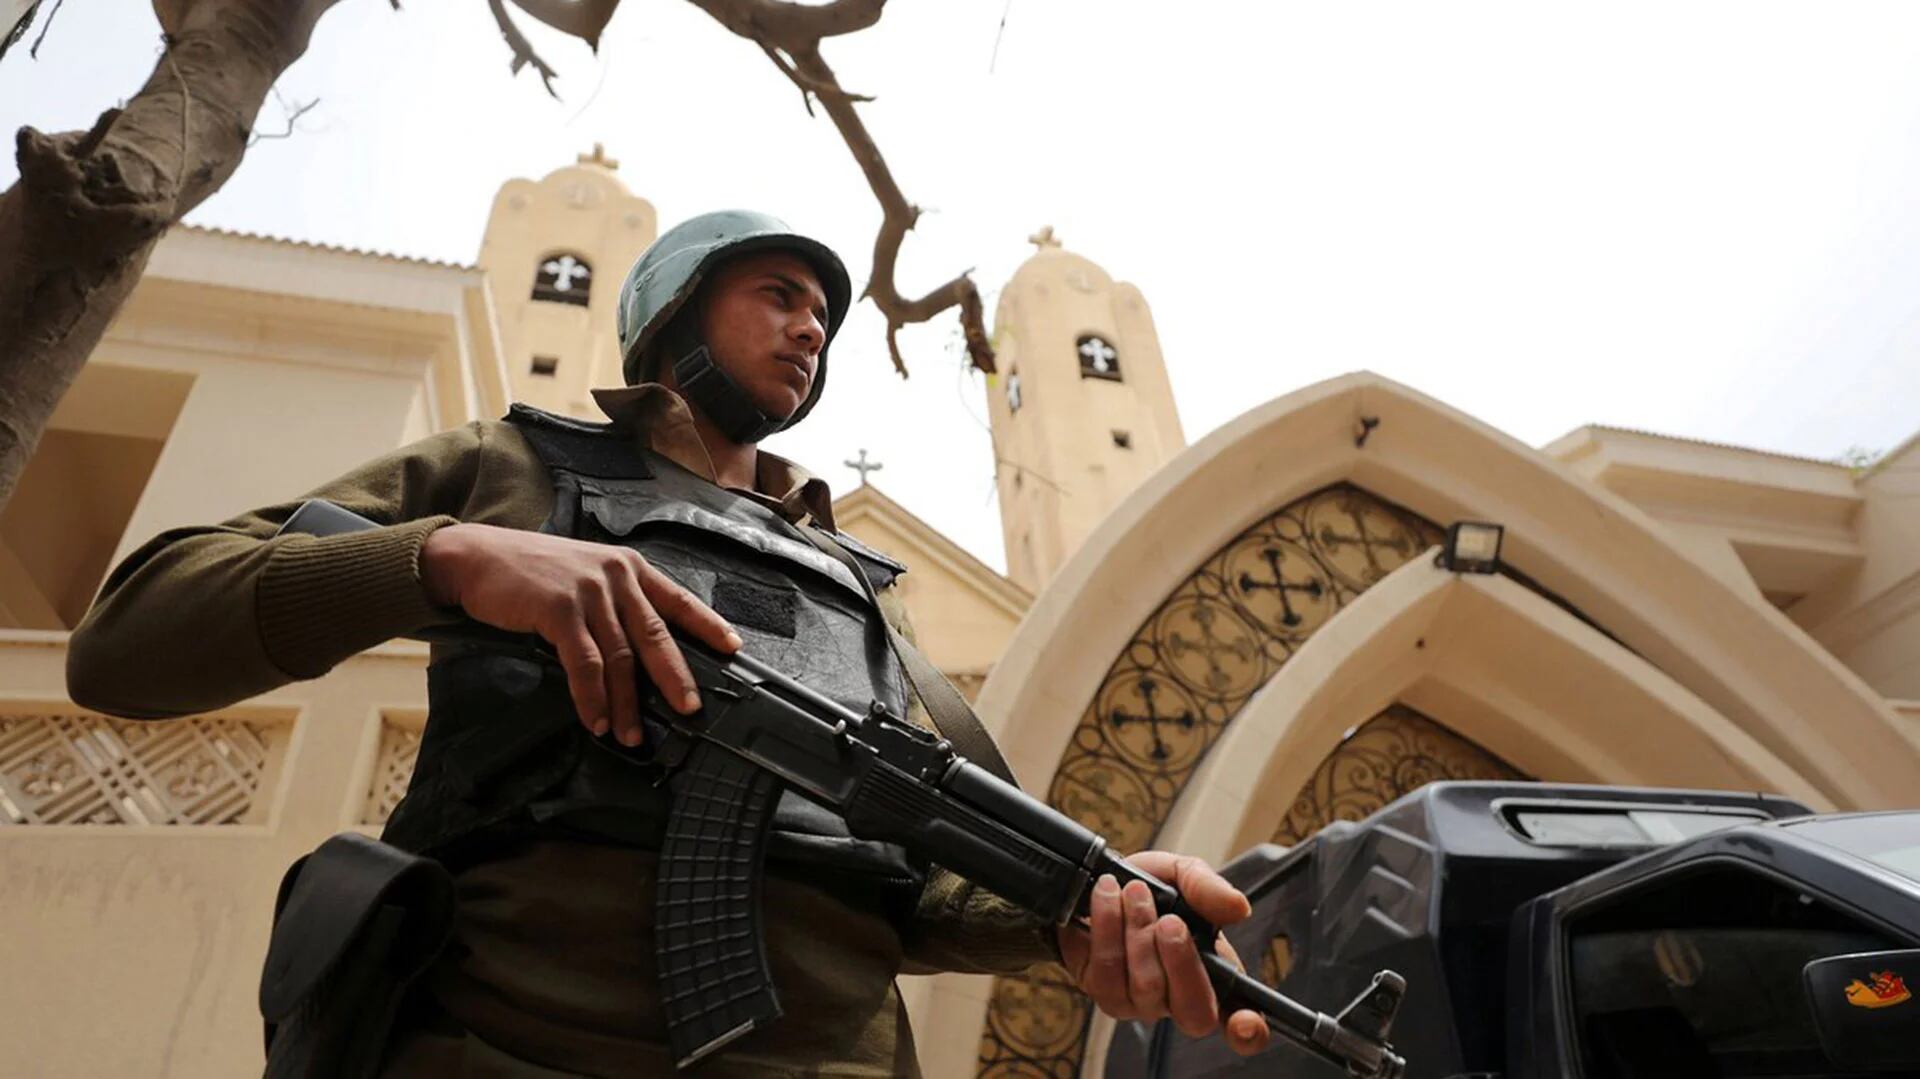 El grupo yihadista Estado Islámico (ISIS, por sus siglas en inglés) reivindicó este sábado el ataque perpetrado la víspera contra cristianos coptos que dejó 29 muertos